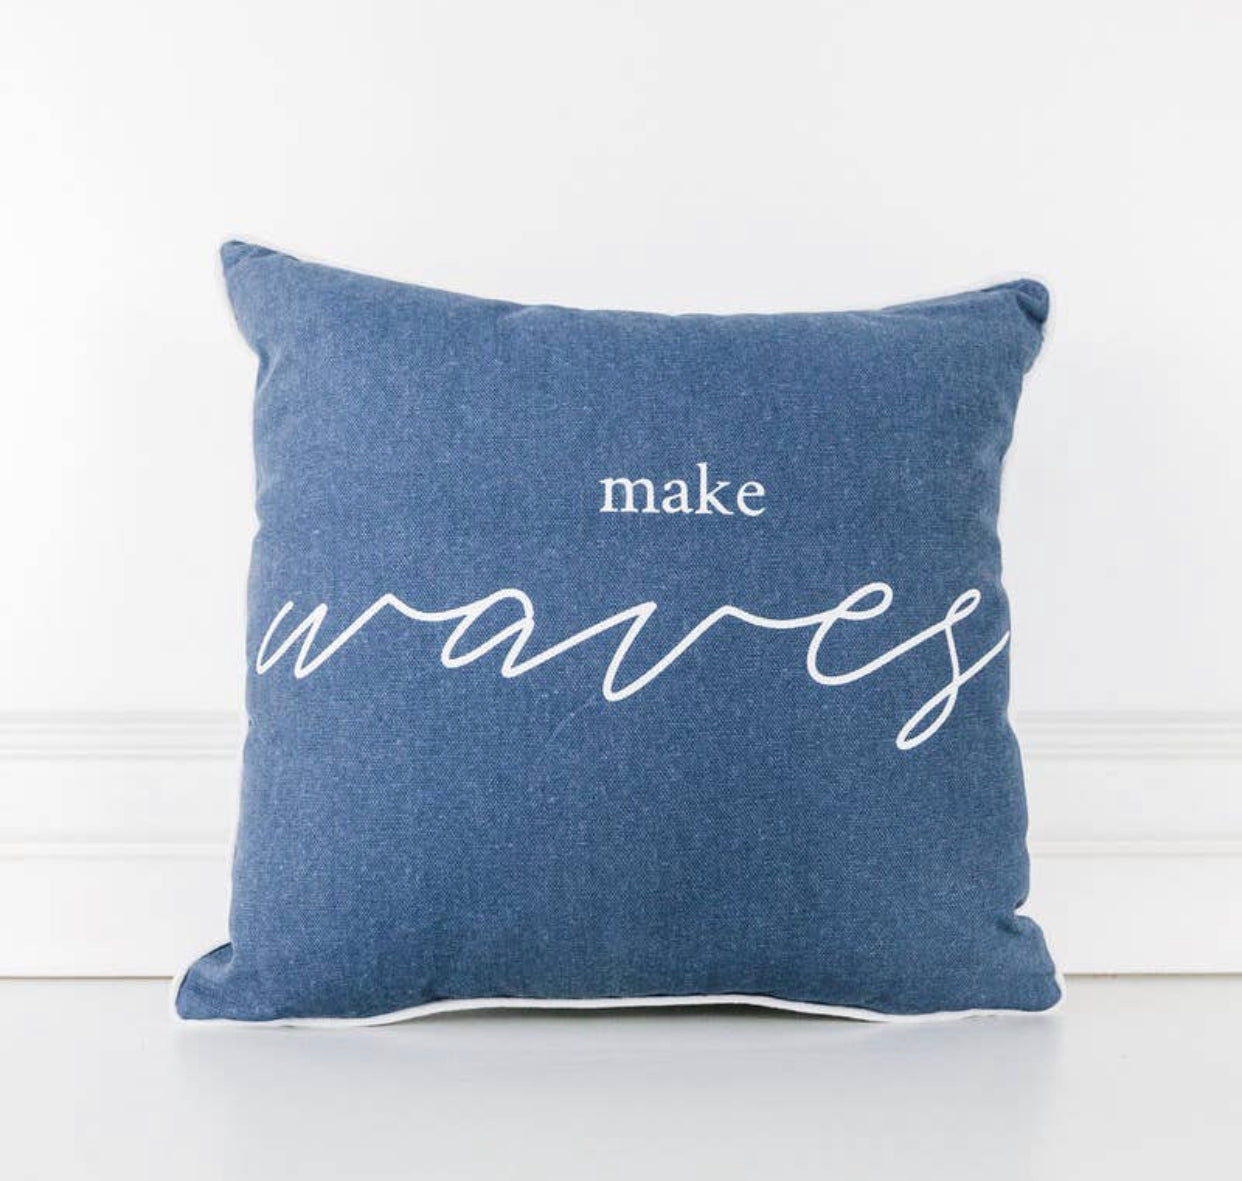 Make waves pillow-reversible